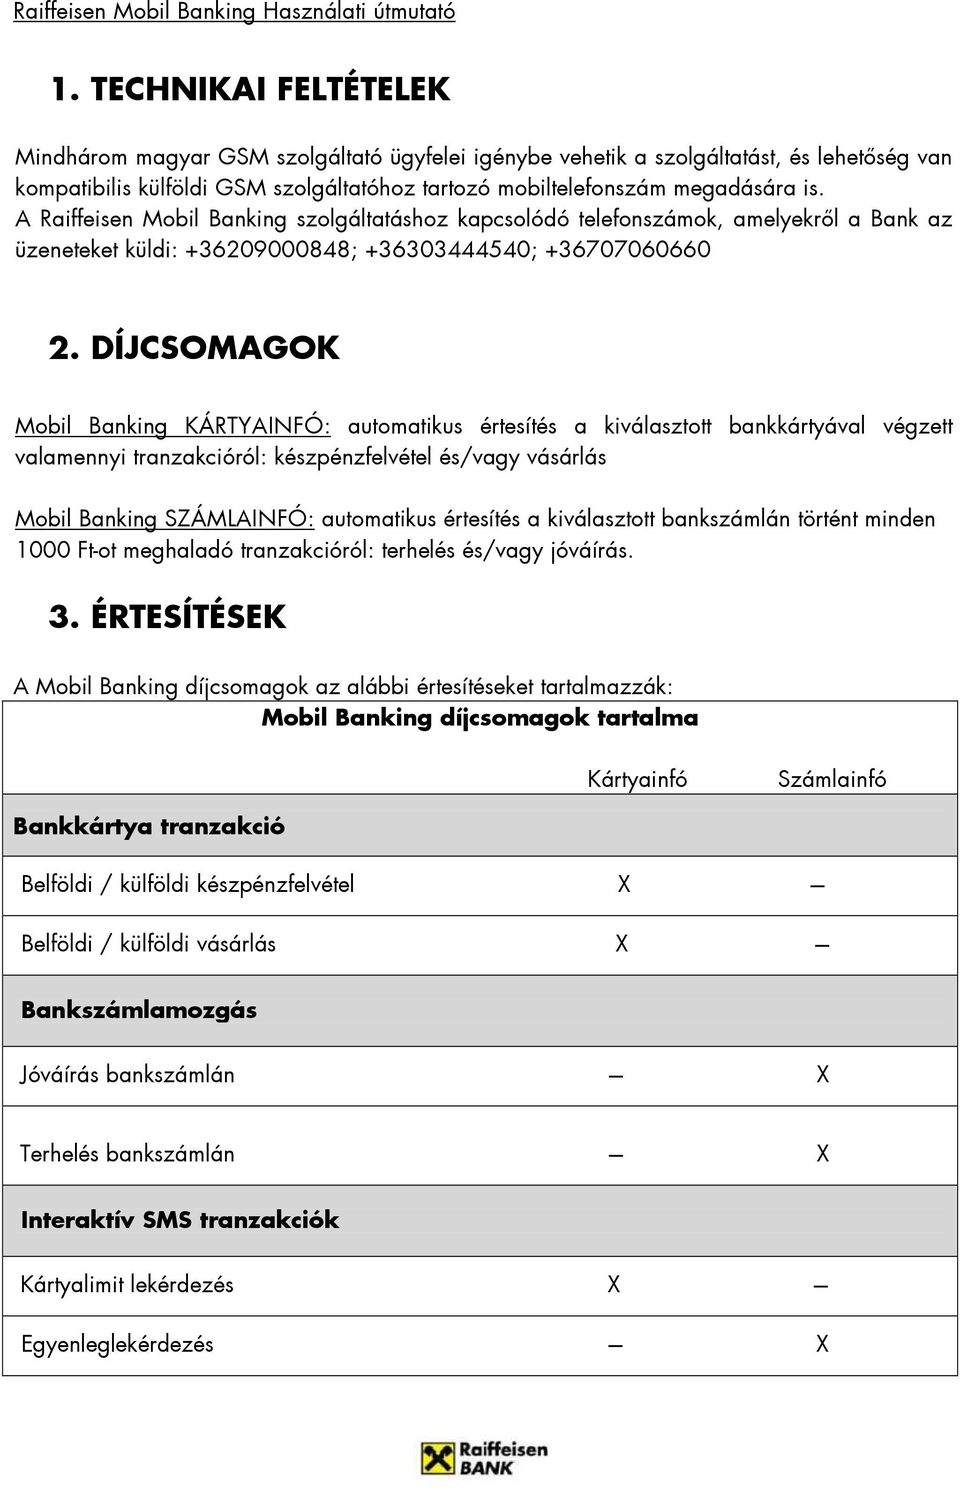 Raiffeisen Mobil Banking - PDF Ingyenes letöltés